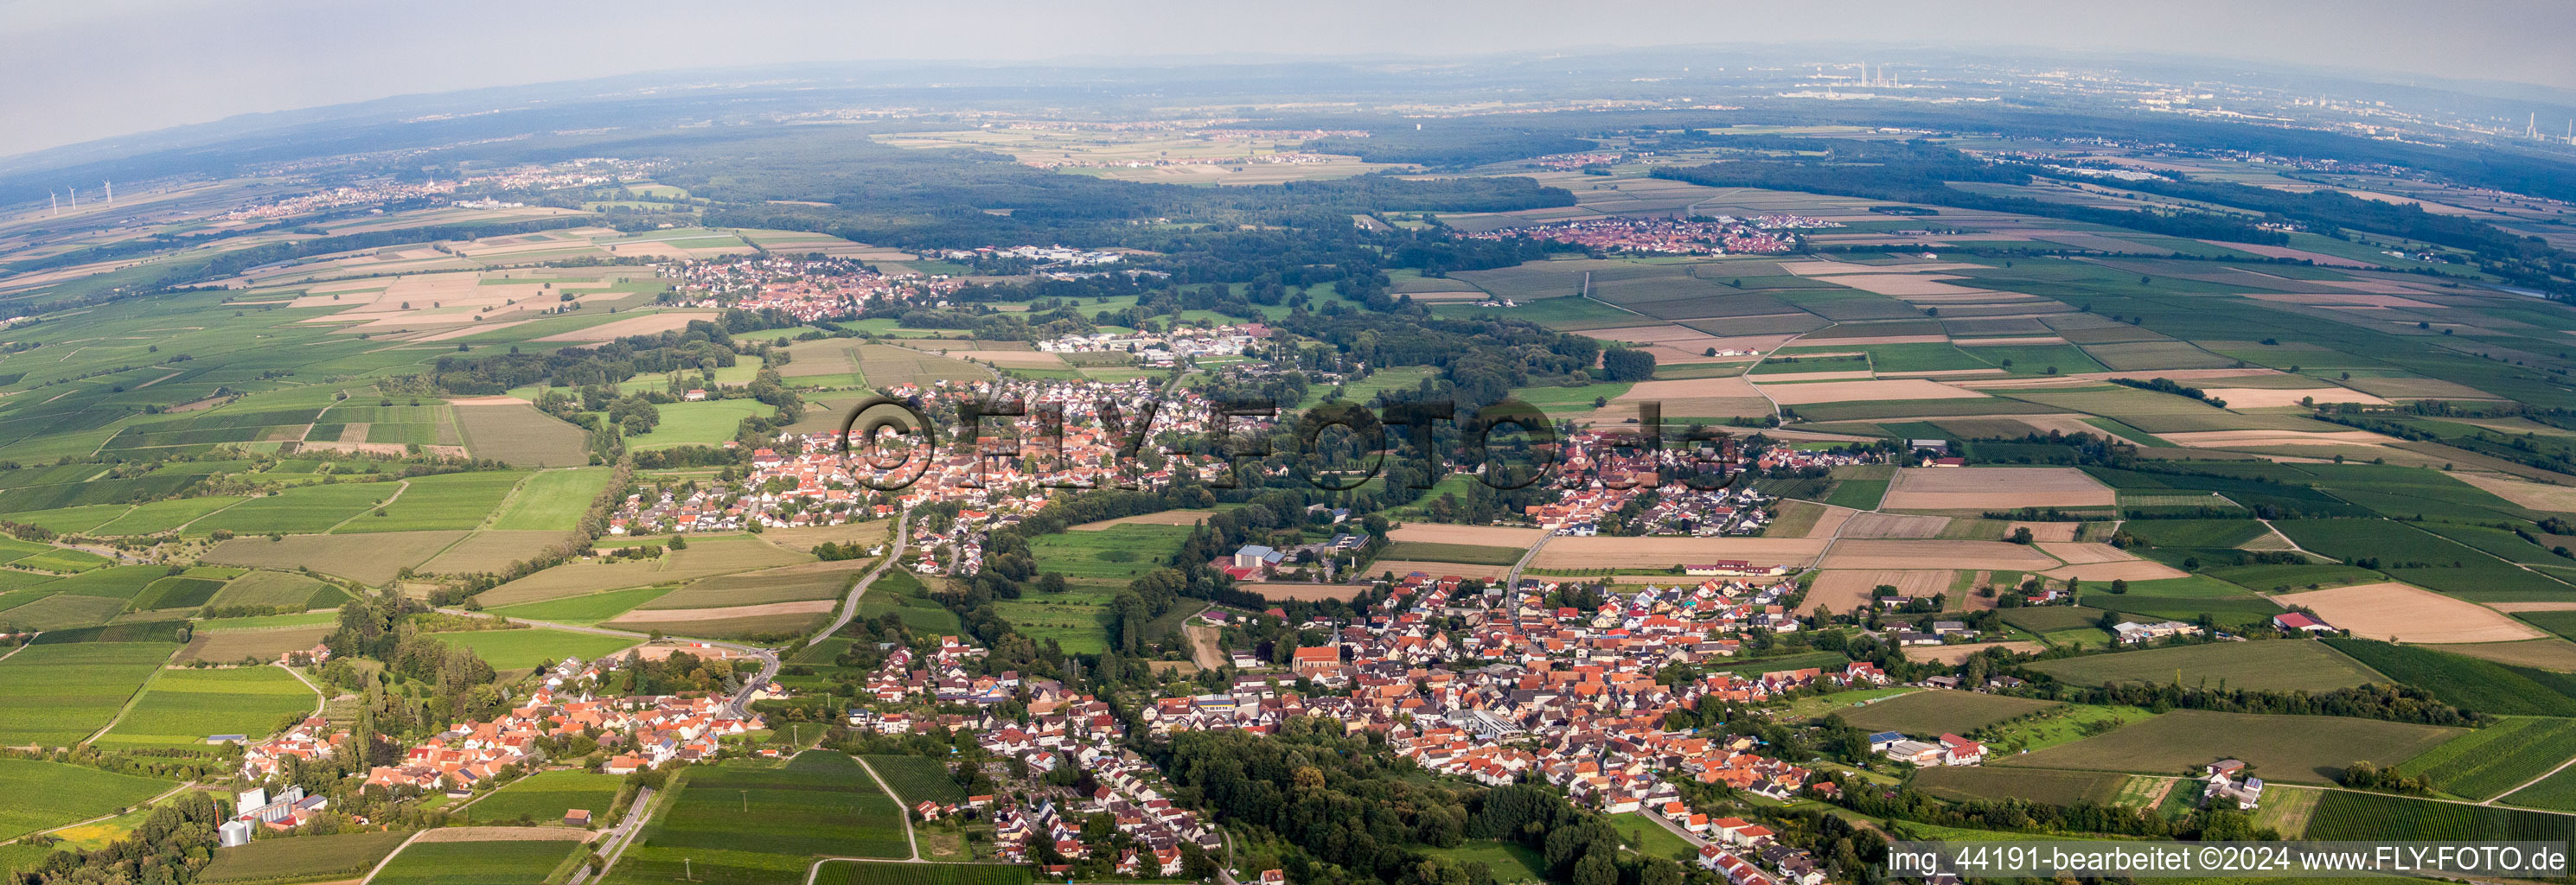 Panorama Perspektive Dorf - Ansicht am Rande von landwirtschaftlichen Feldern und Nutzflächen in Billigheim-Ingenheim im Bundesland Rheinland-Pfalz, Deutschland